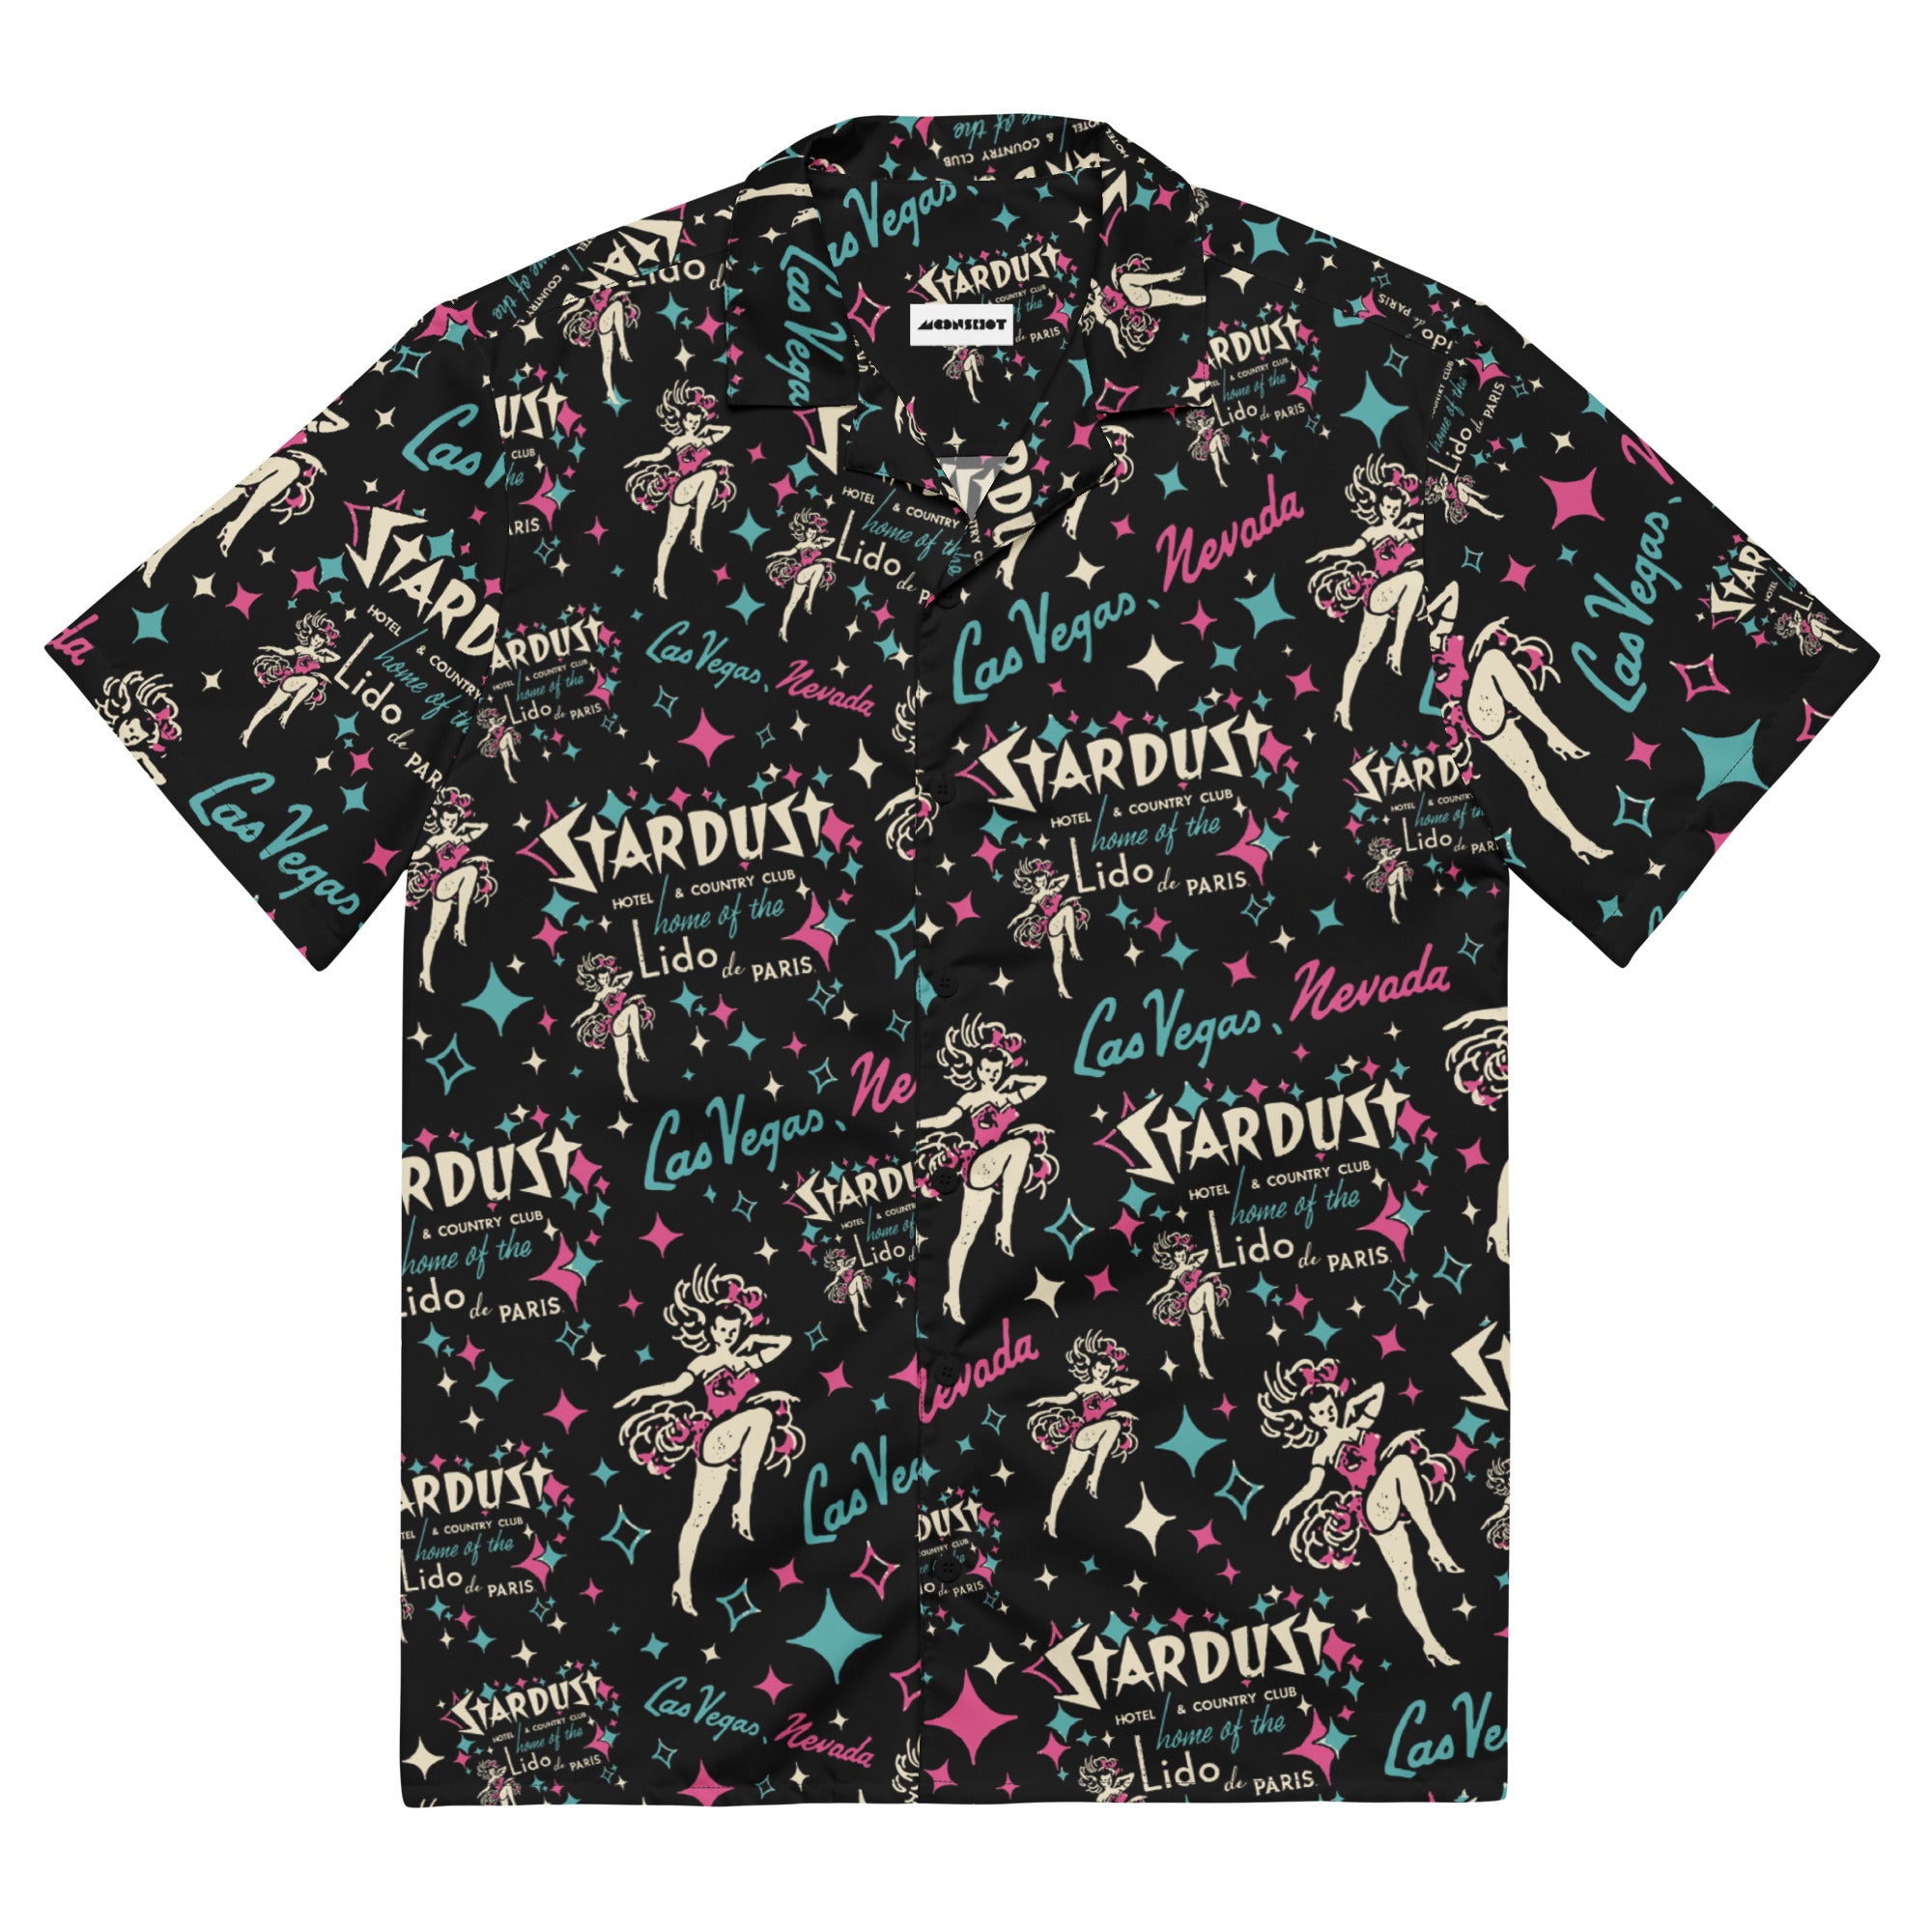 Stardust - Vintage Las Vegas - Button Up Shirt